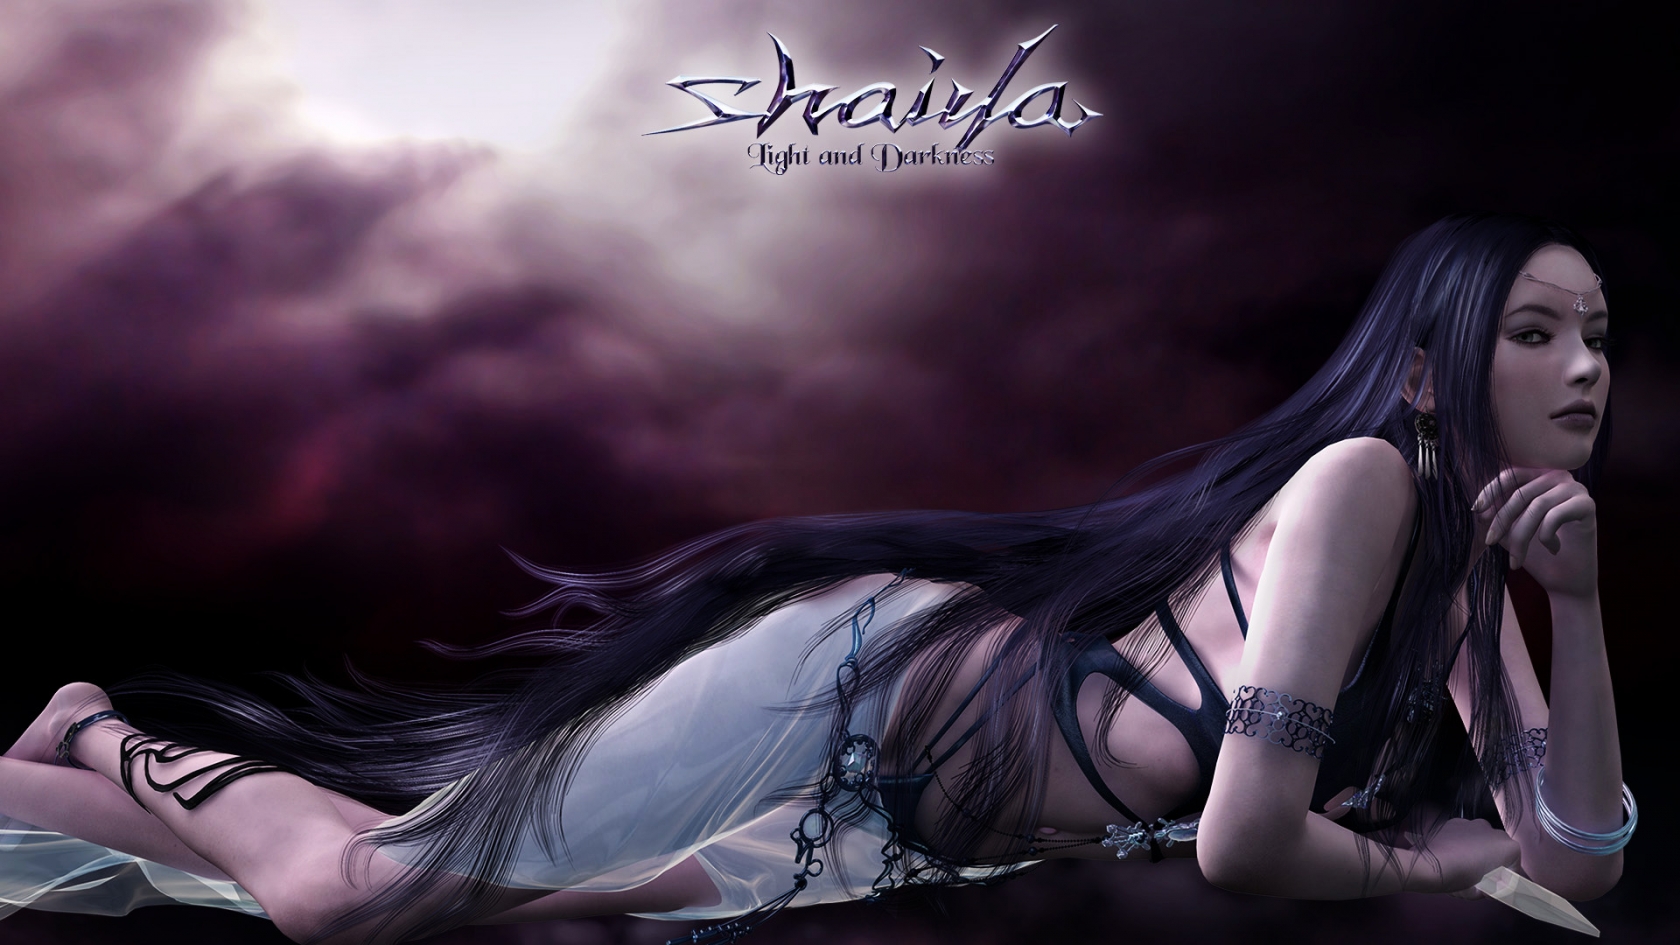 Shaiya Long Purple Hair for 1680 x 945 HDTV resolution